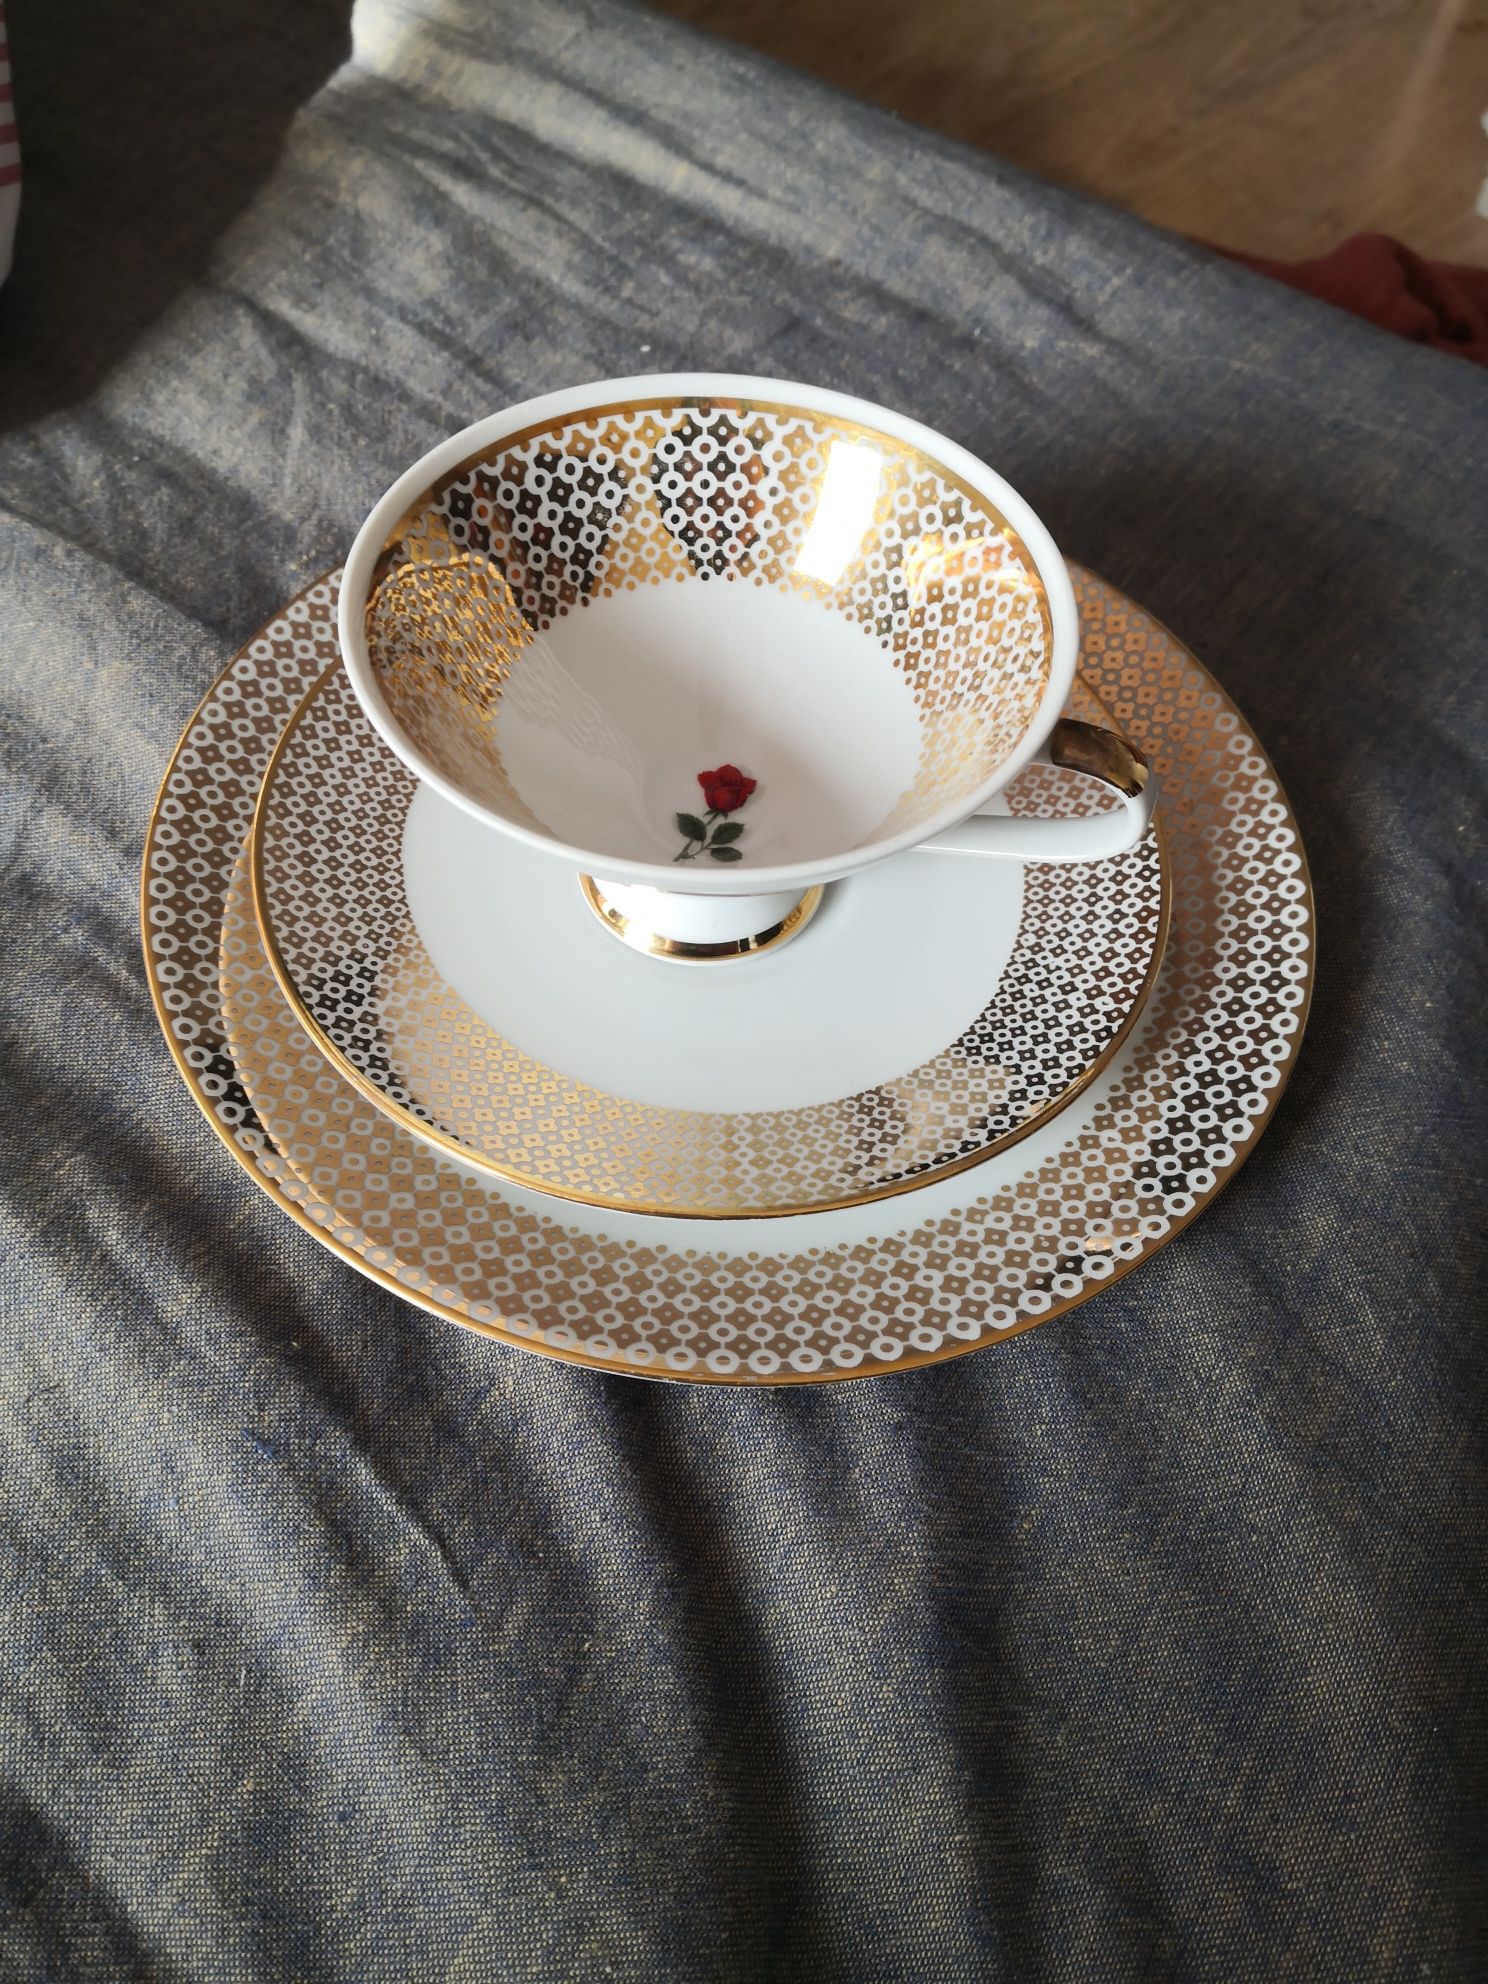 Kolekcjonerska porcelana mitterteich filiżanka dwa talerze zestaw kawo